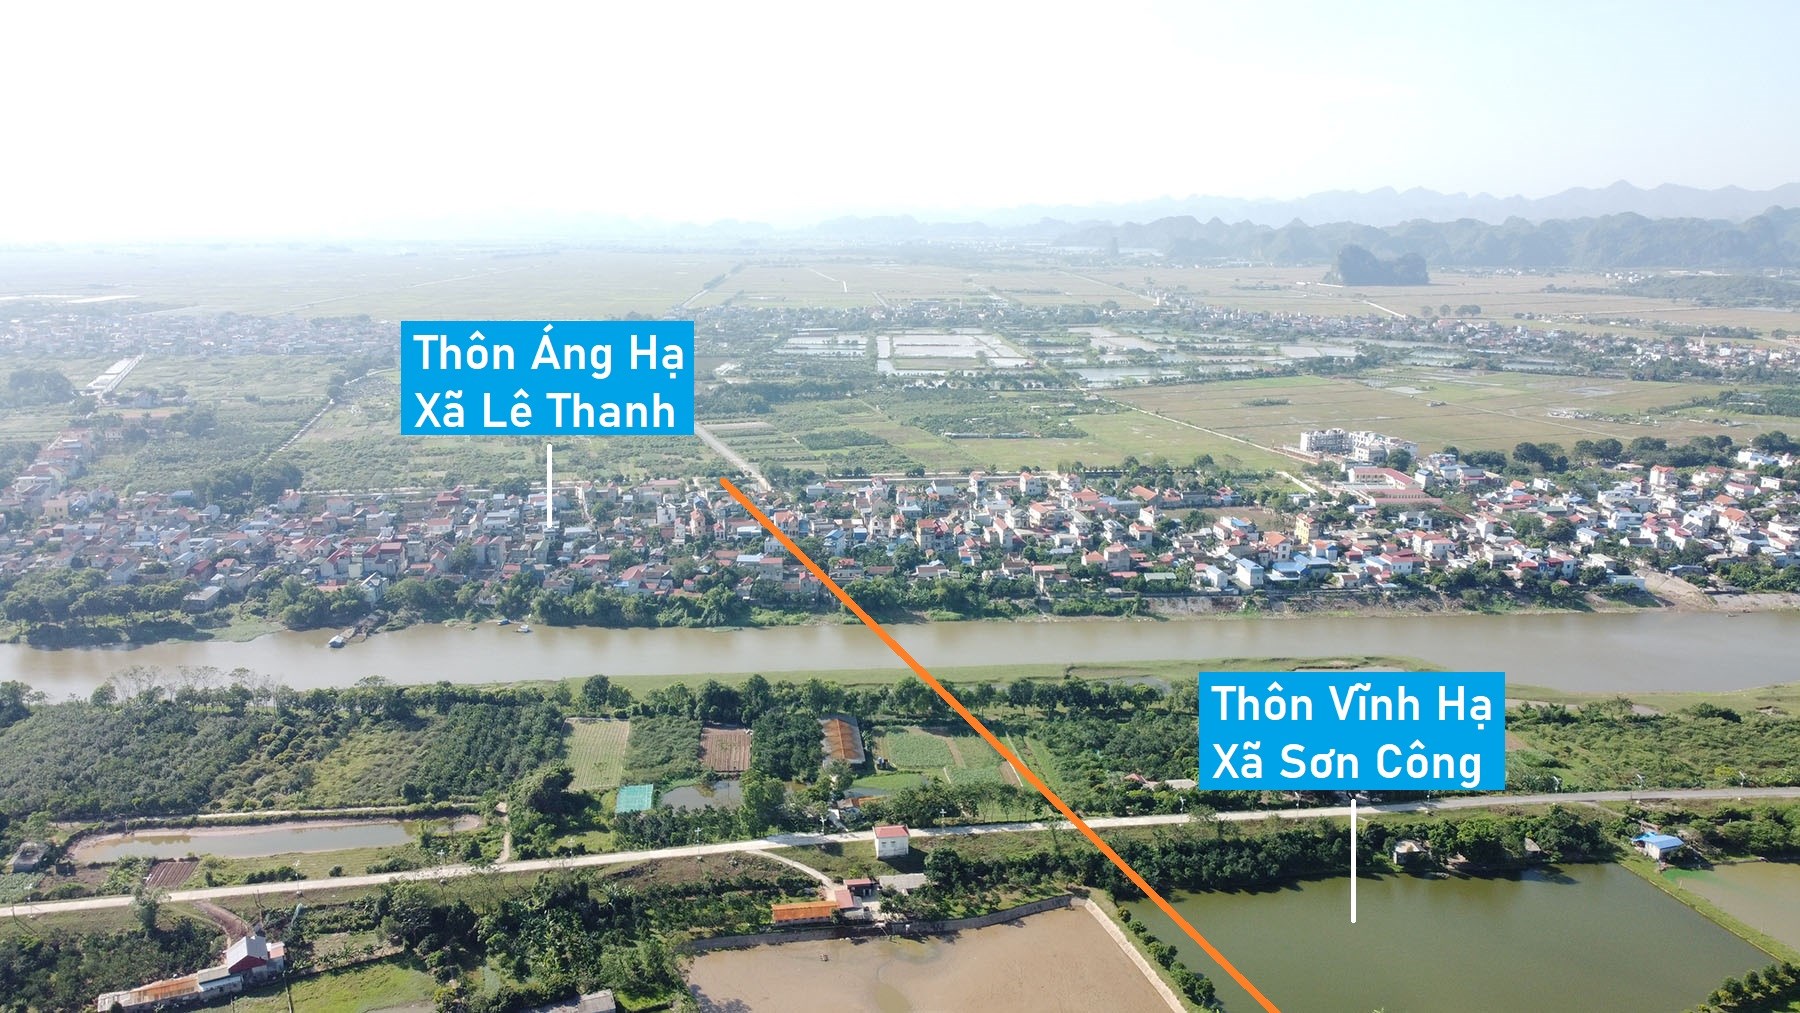 Toàn cảnh vị trí quy hoạch cầu vượt sông Đáy nối xã Sơn Công, Ứng Hòa với Lê Thanh, Mỹ Đức, Hà Nội